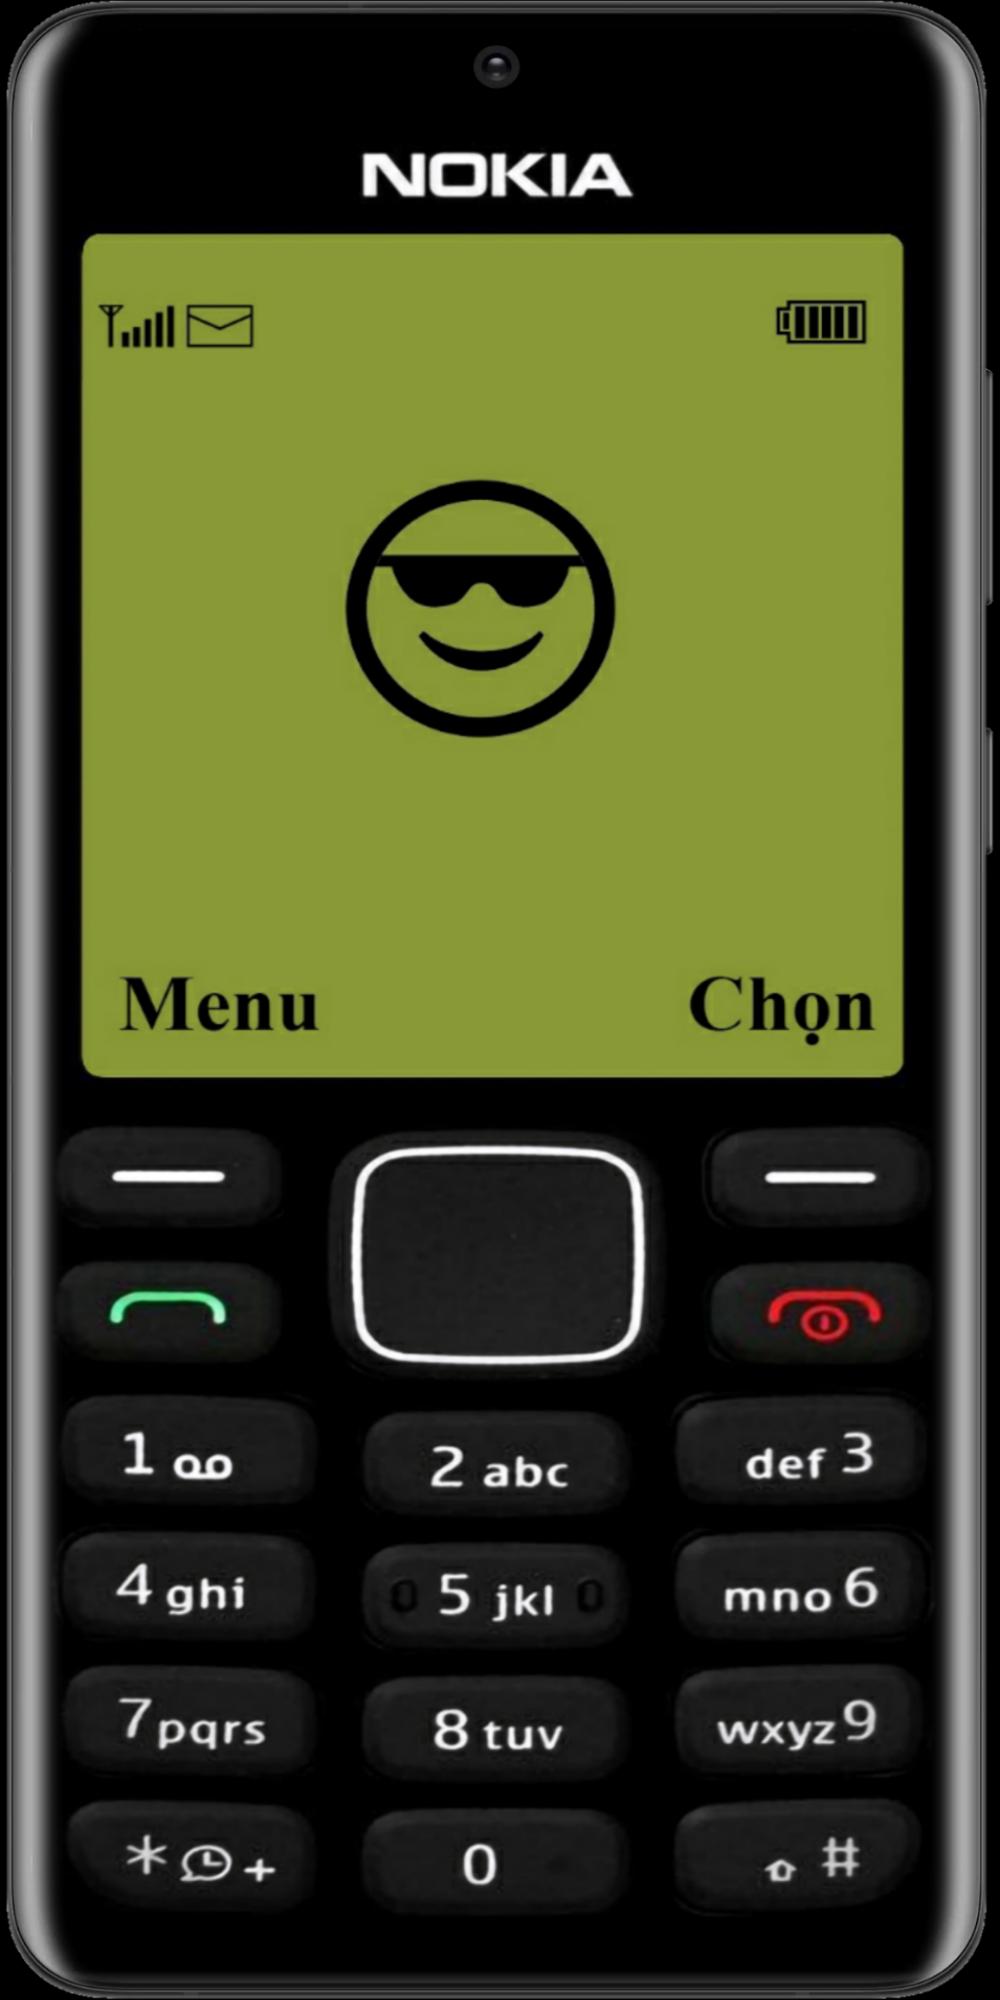 Simulator For Old Nokia: Bạn muốn tìm lại cảm giác của một chiếc điện thoại Nokia cũ với những trò chơi kinh điển? Với Simulator For Old Nokia, bạn có thể trải nghiệm lại những trò chơi thú vị một thời trên màn hình điện thoại của mình. Hãy xem từng bức ảnh và cảm nhận lại niềm hạnh phúc của tuổi thơ nhé.